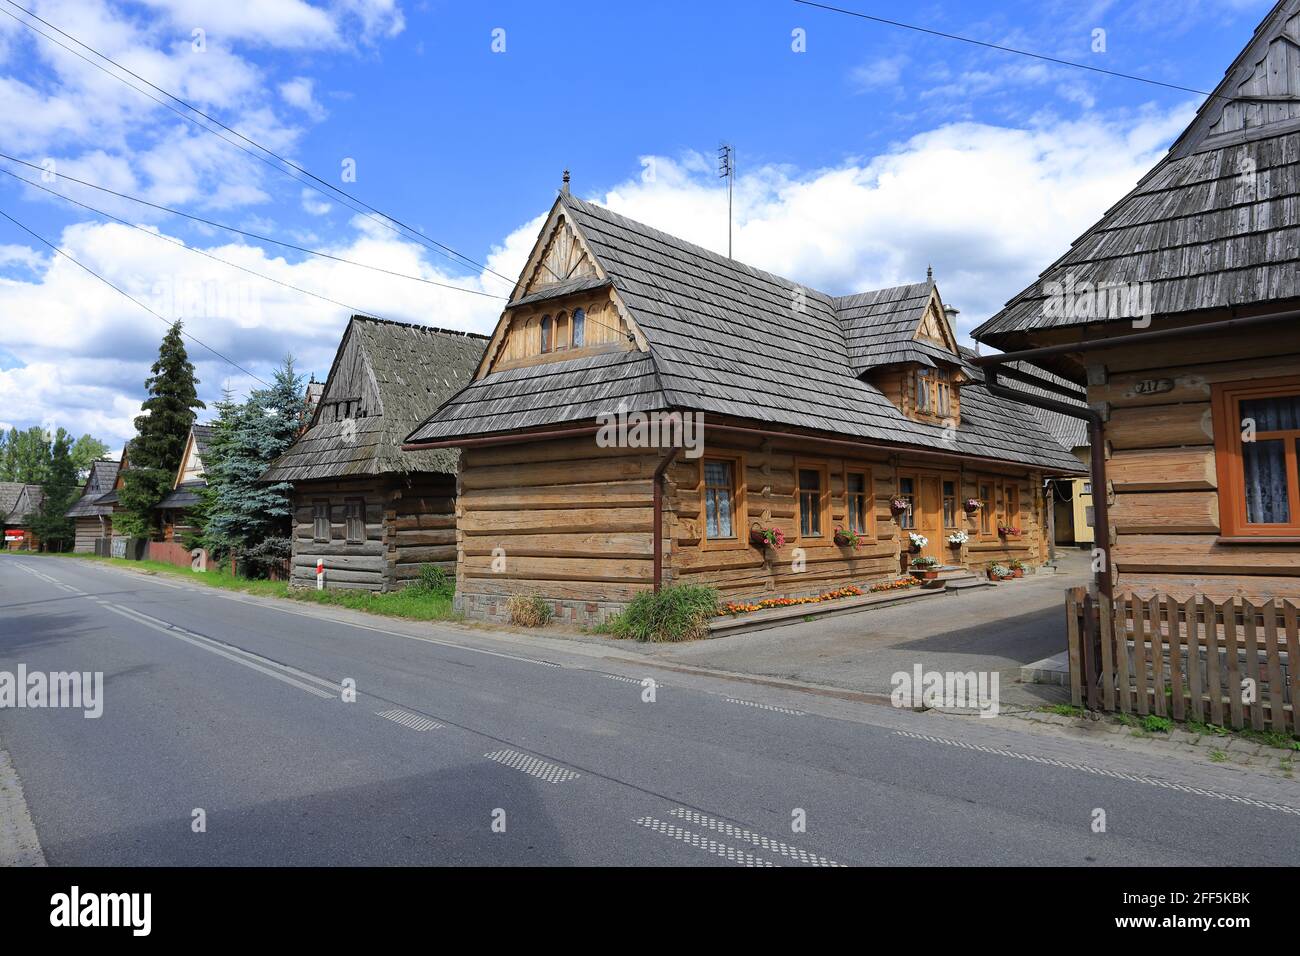 Maisons en bois, Chocholow, Pohale, Pologne Banque D'Images